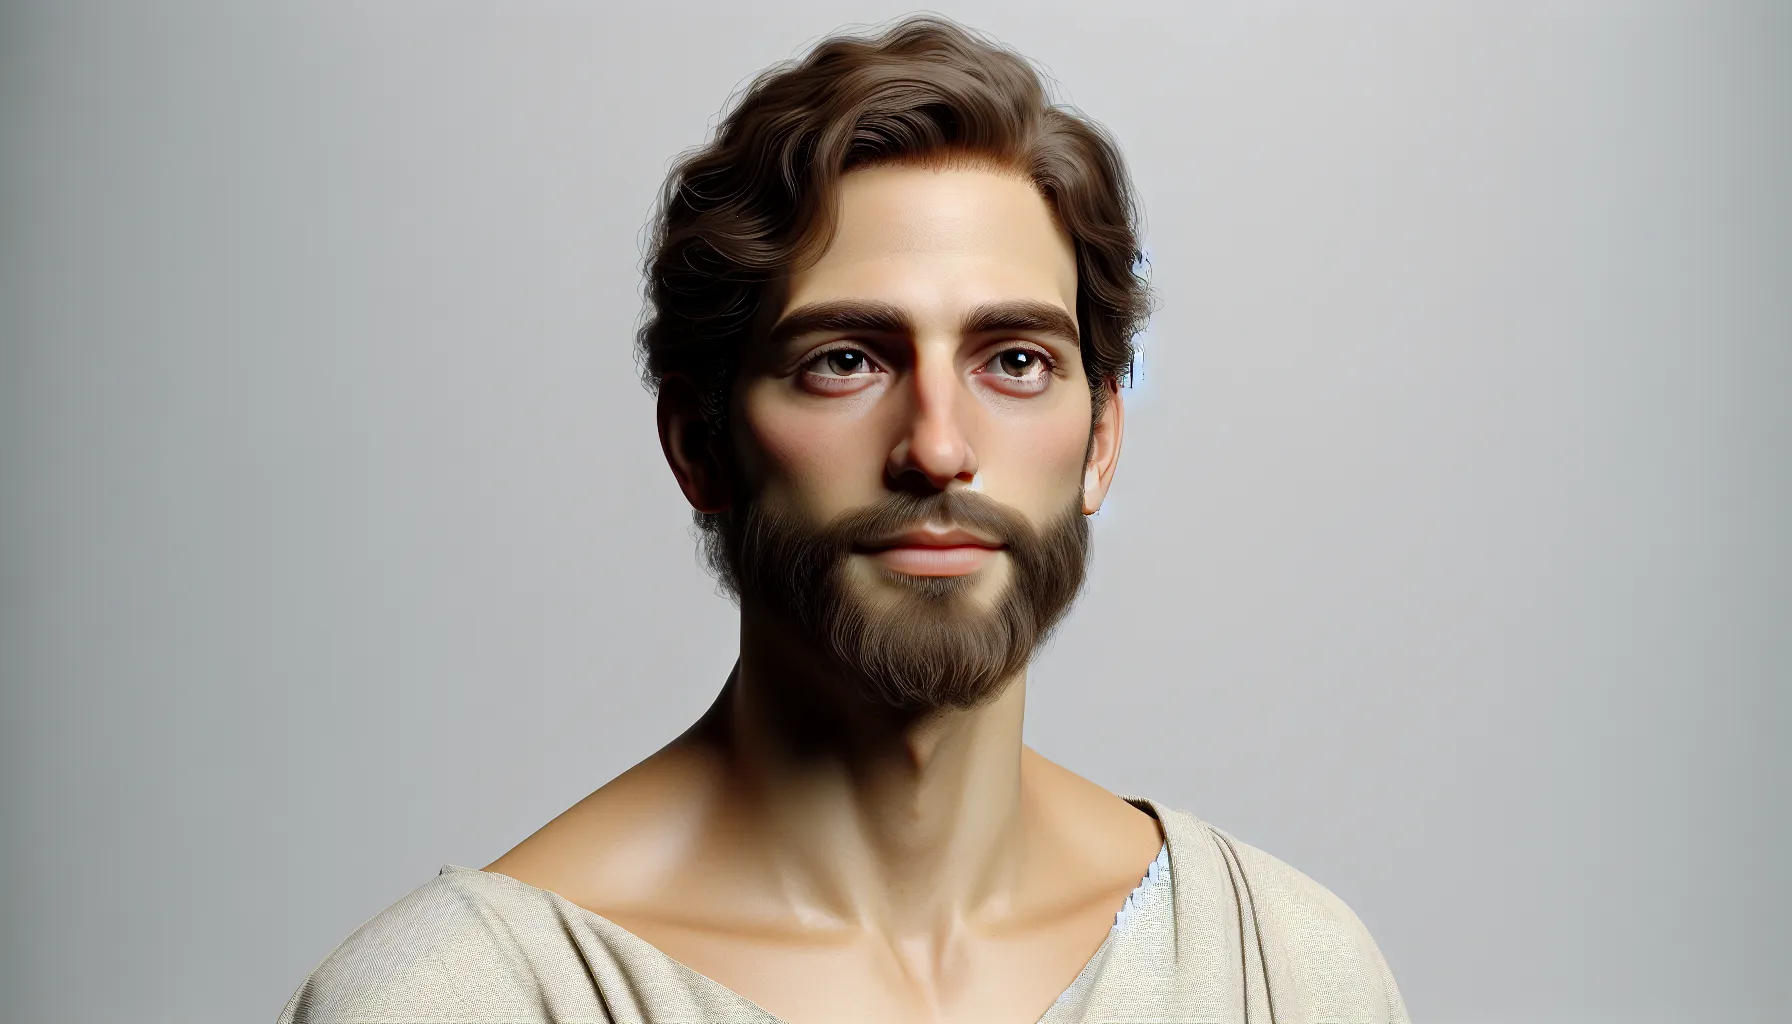 Imagen de un hombre de aspecto sereno y vestimenta simple, sugiriendo la representación de Adán según la Biblia.